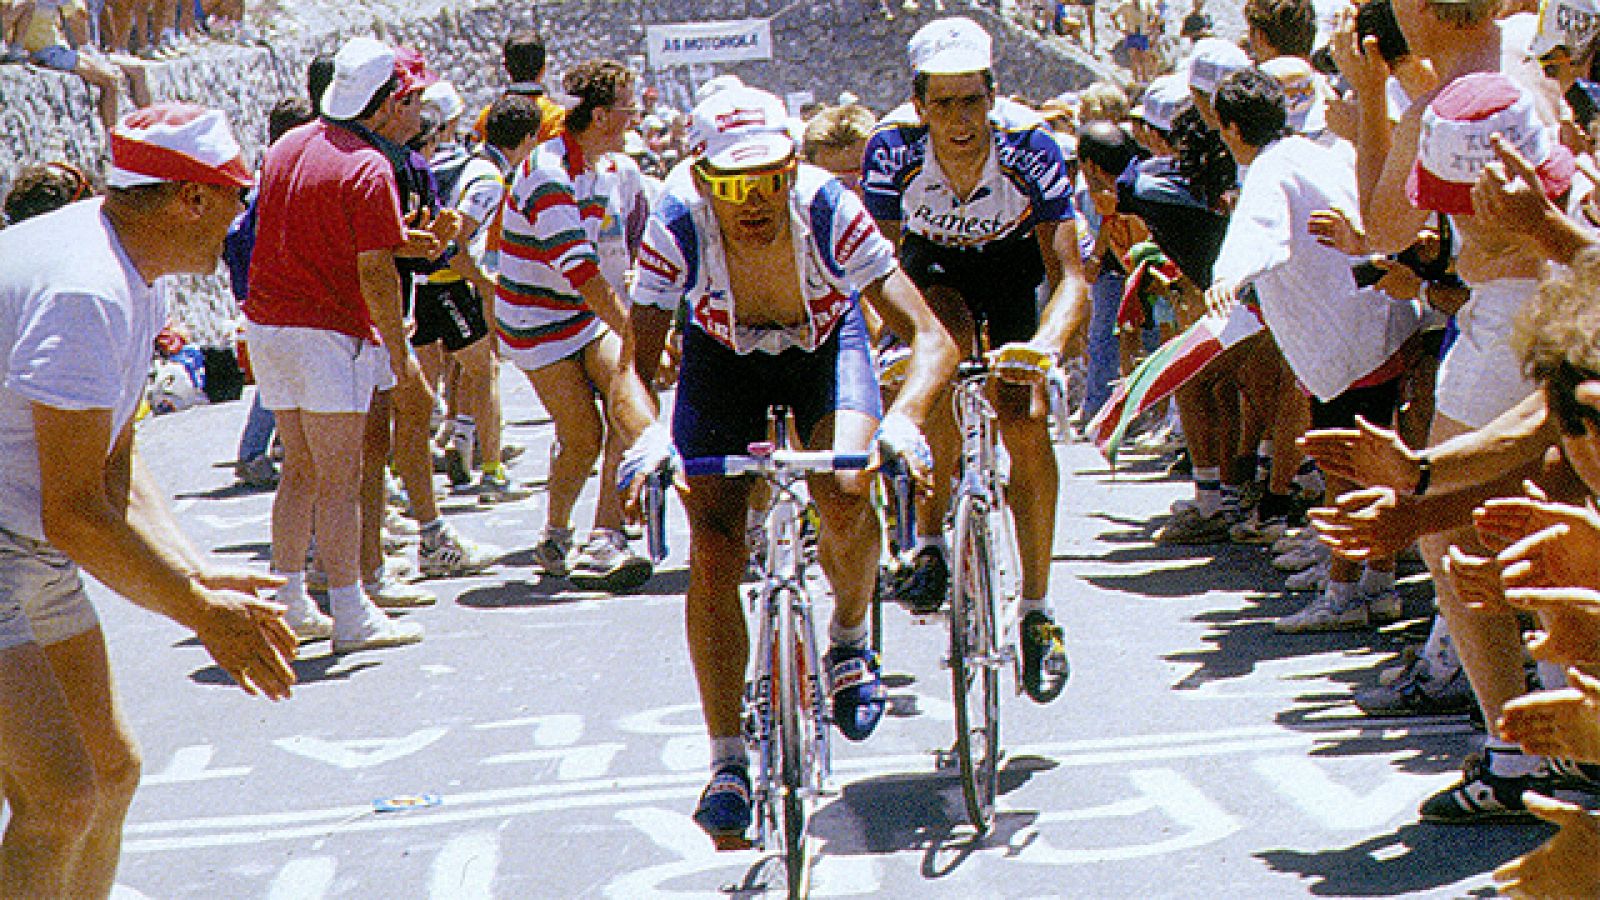 Miguel presentó su candidatura al batir a Lemond en la primera contrarreloj larga del Tour del 91, 73 km en torno a la localidad de Alençon. En la etapa reina de los Pirineos fue parte del reducido grupo de corredores favoritos a la victoria final. E